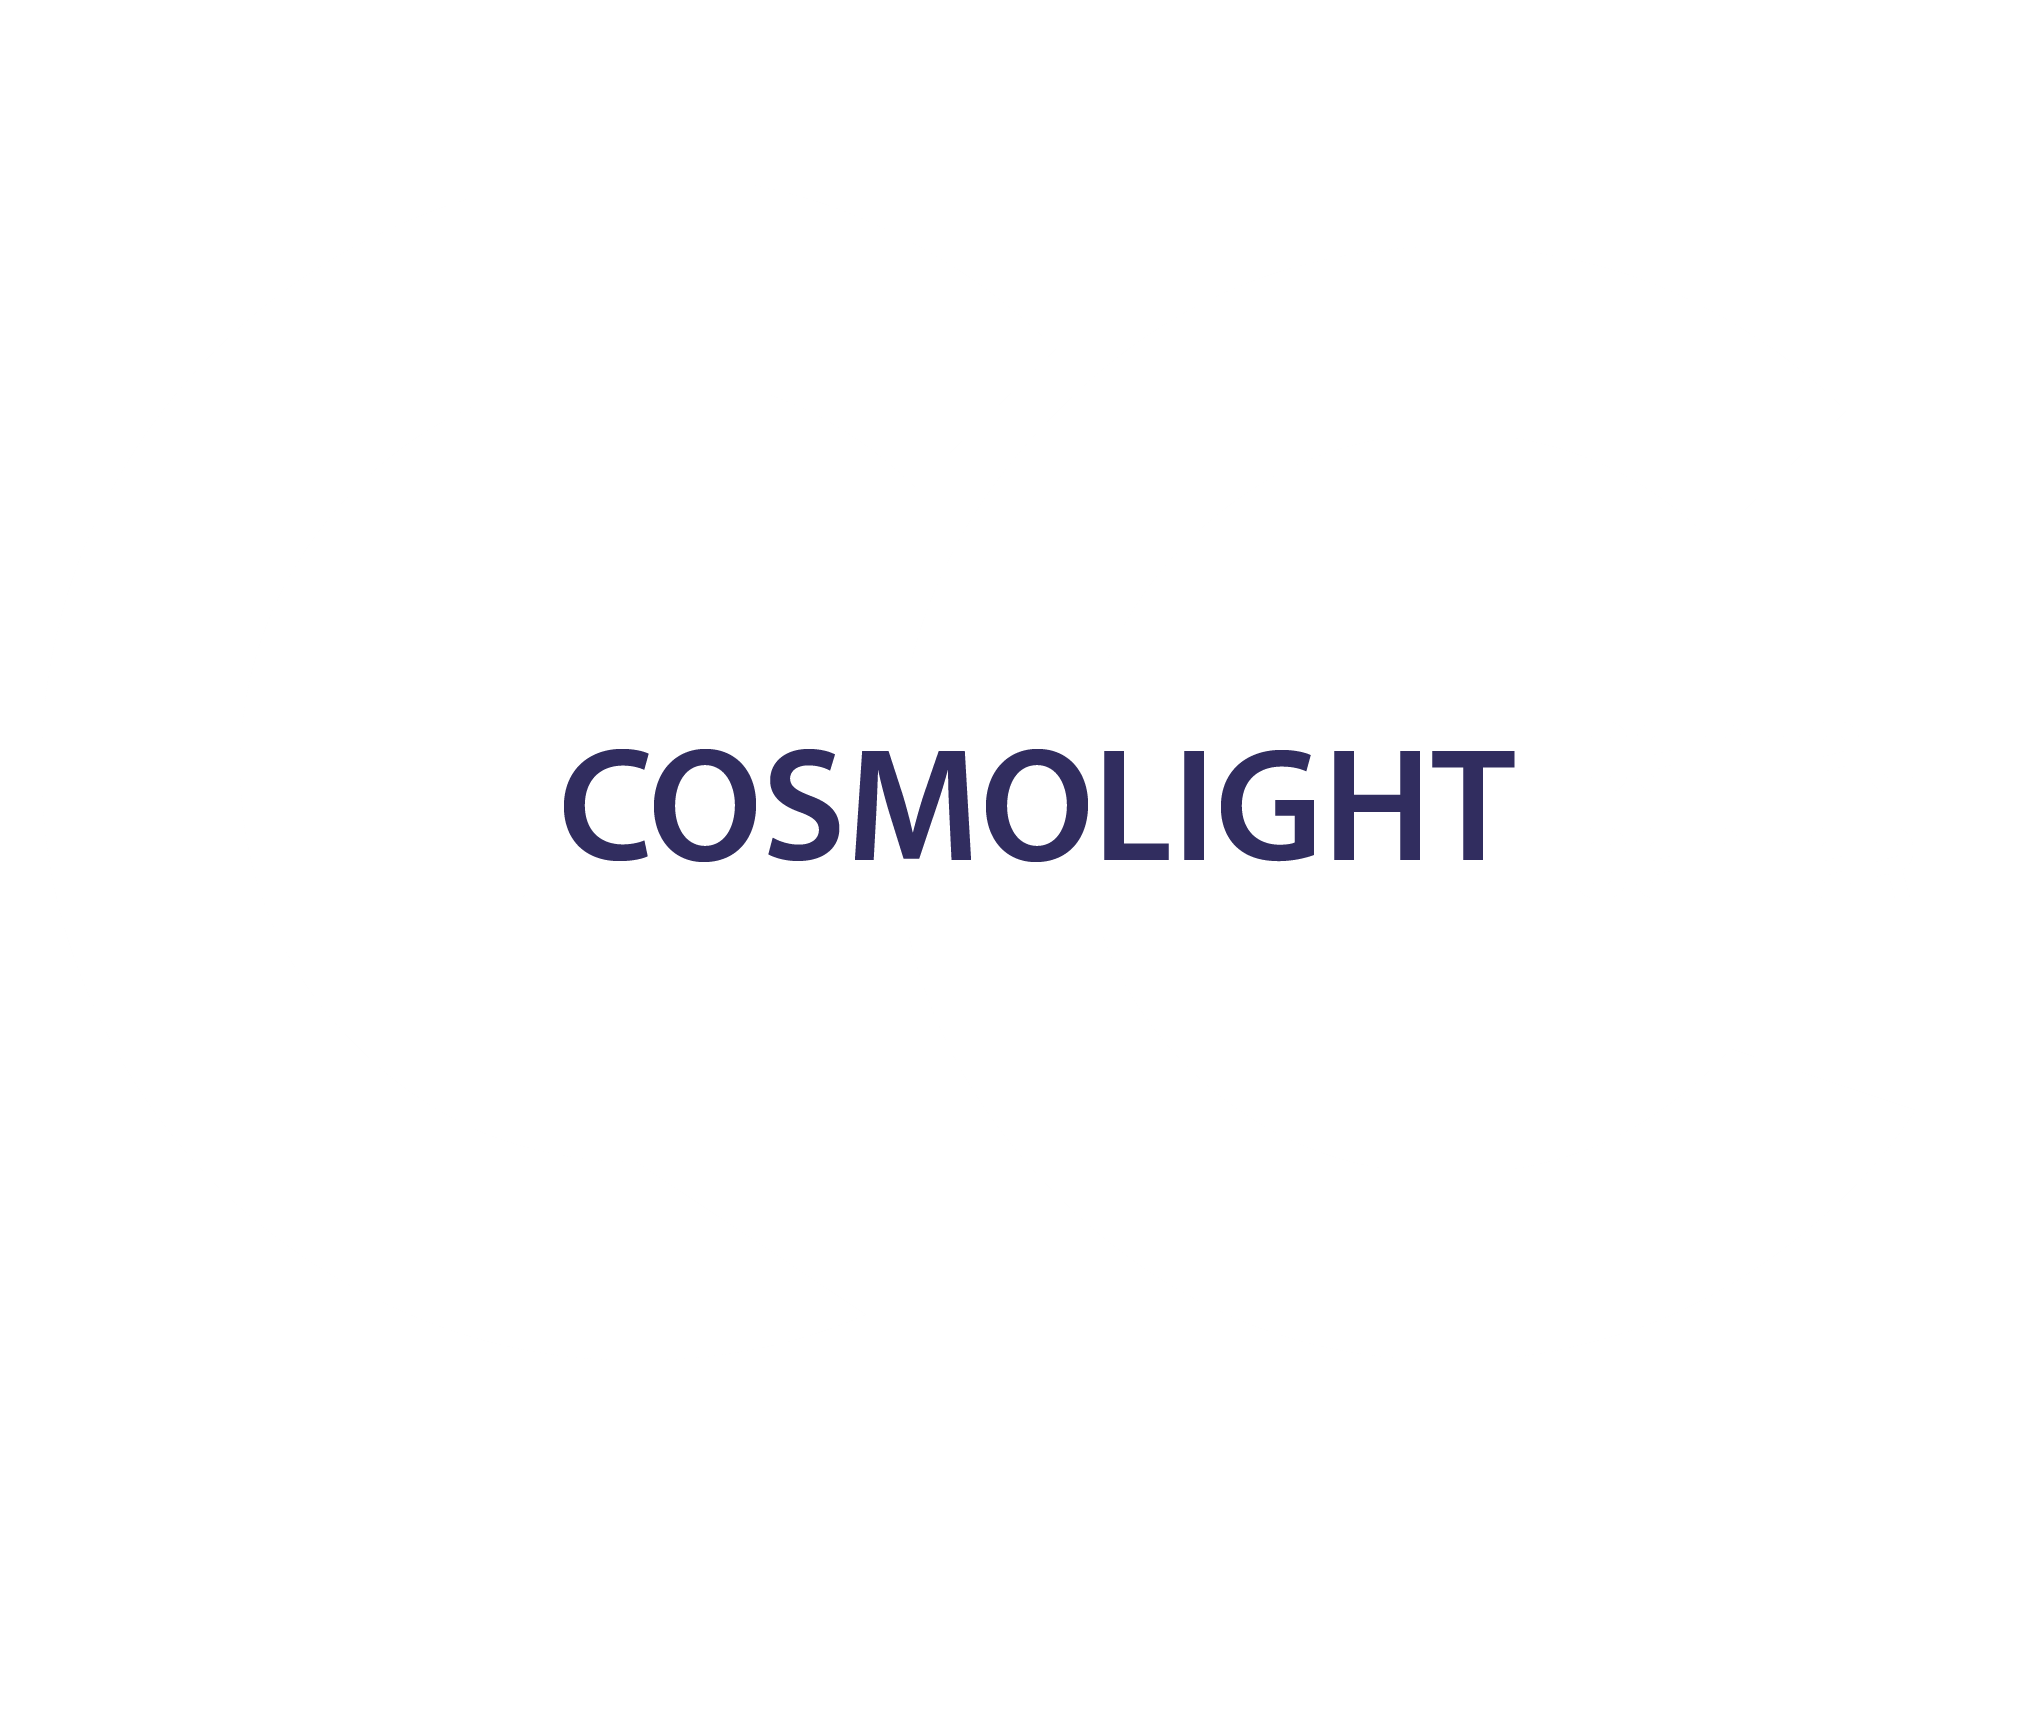 CosmoLight Dental Center